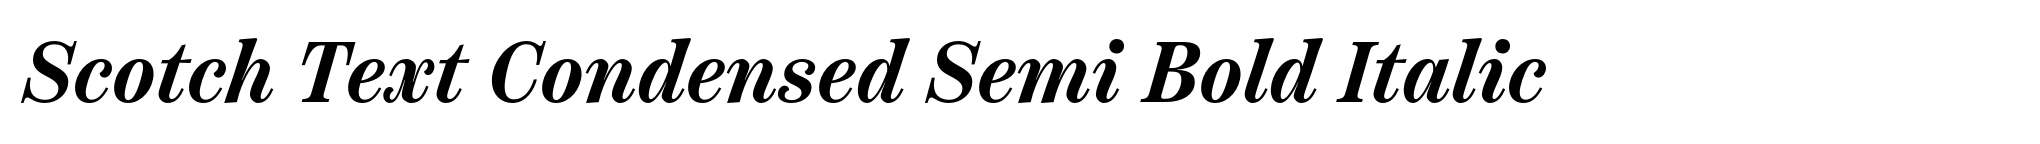 Scotch Text Condensed Semi Bold Italic image